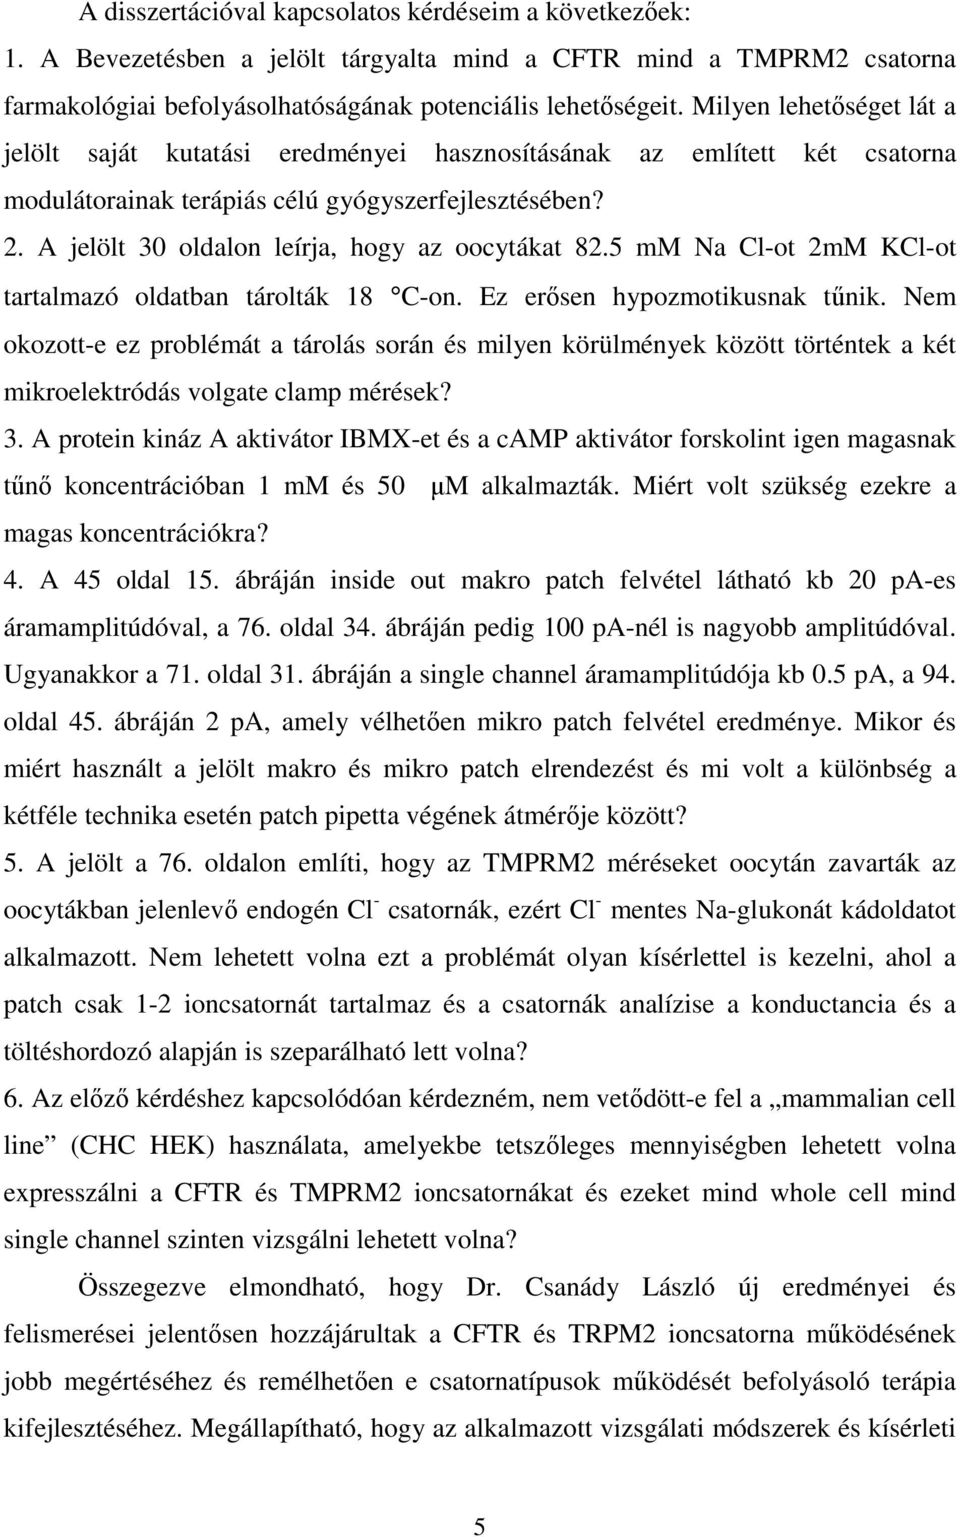 A jelölt 30 oldalon leírja, hogy az oocytákat 82.5 mm Na Cl-ot 2mM KCl-ot tartalmazó oldatban tárolták 18 C-on. Ez erısen hypozmotikusnak tőnik.